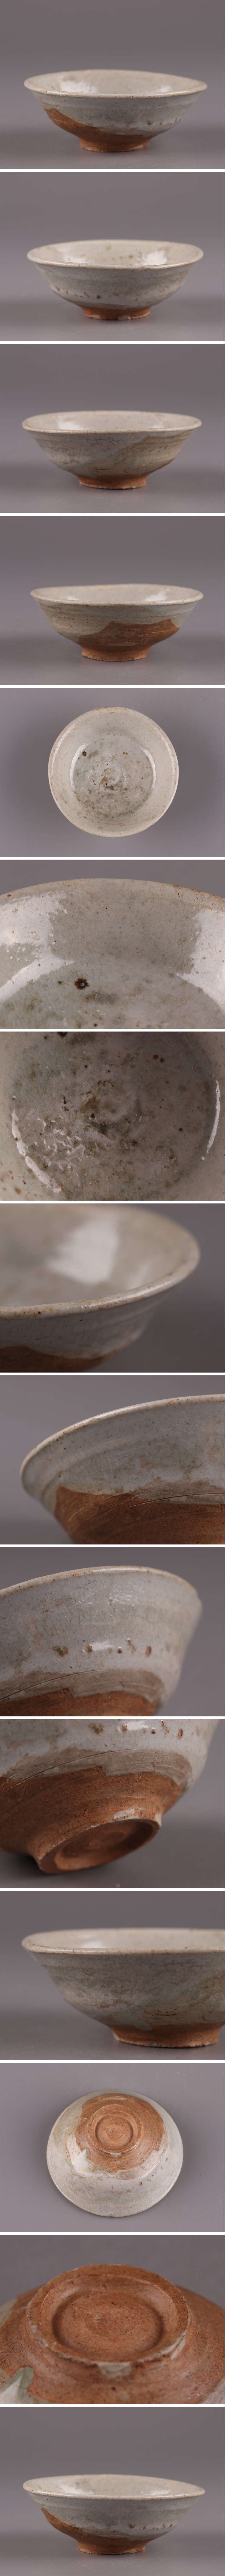 入荷済古美術 朝鮮古陶磁器 李朝 茶碗 時代物 極上品 初だし品 4247 李朝